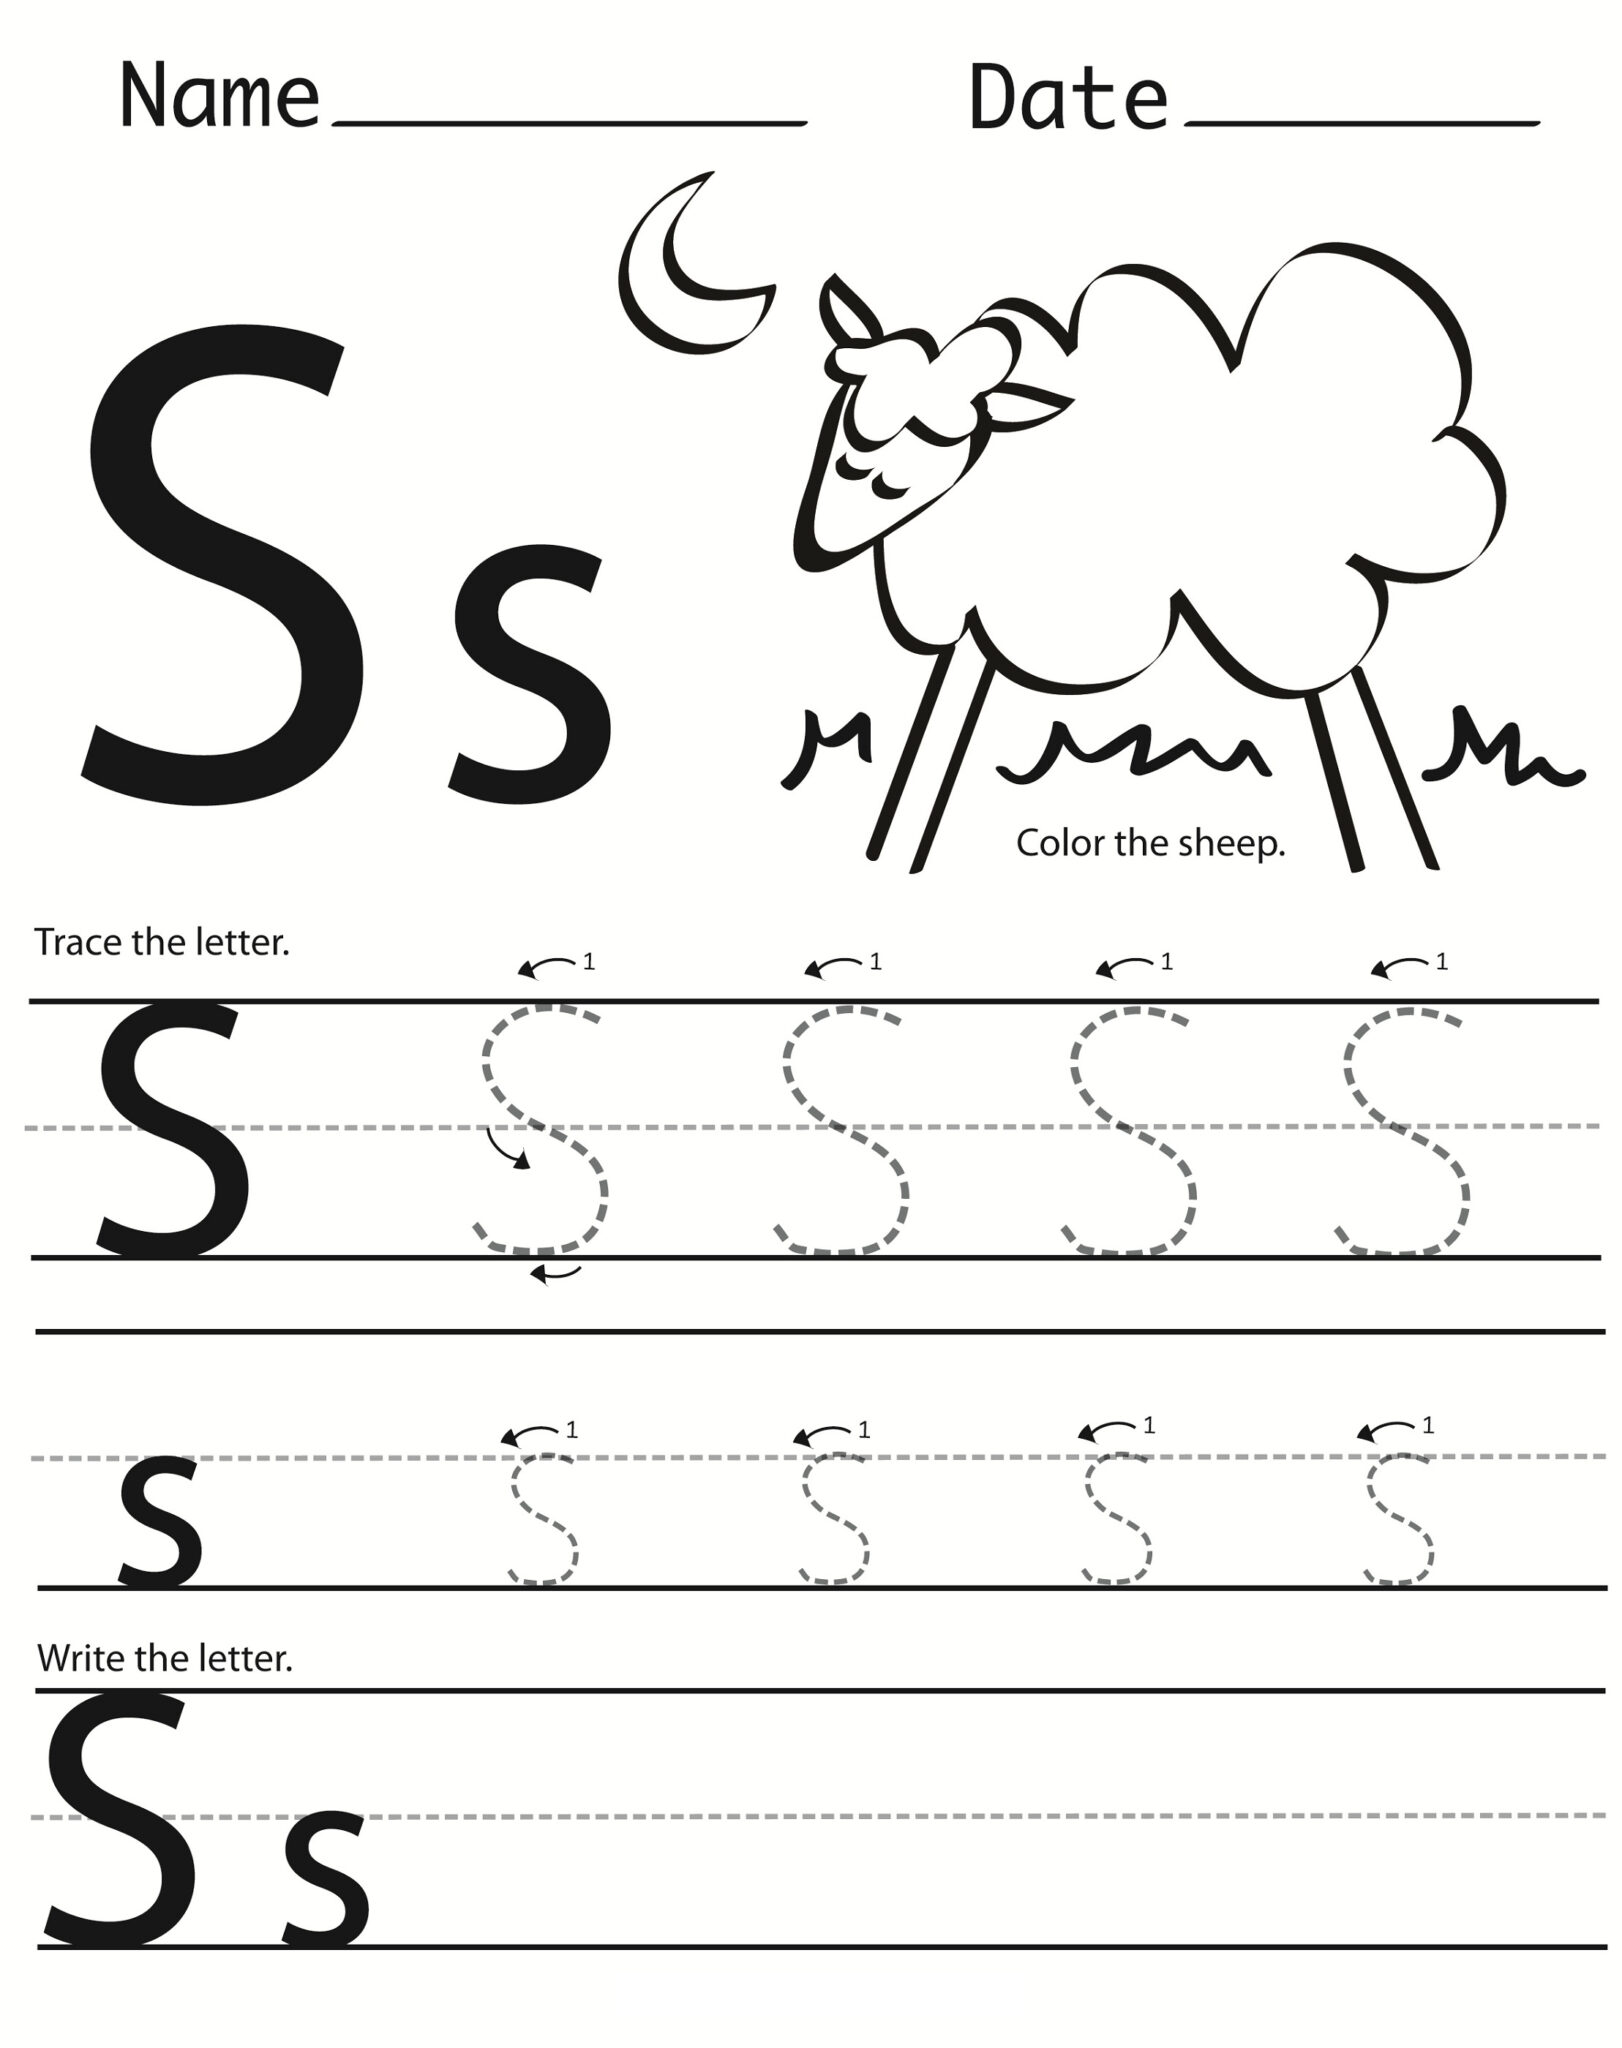 free-printable-letters-worksheets-for-preschool-printable-worksheets